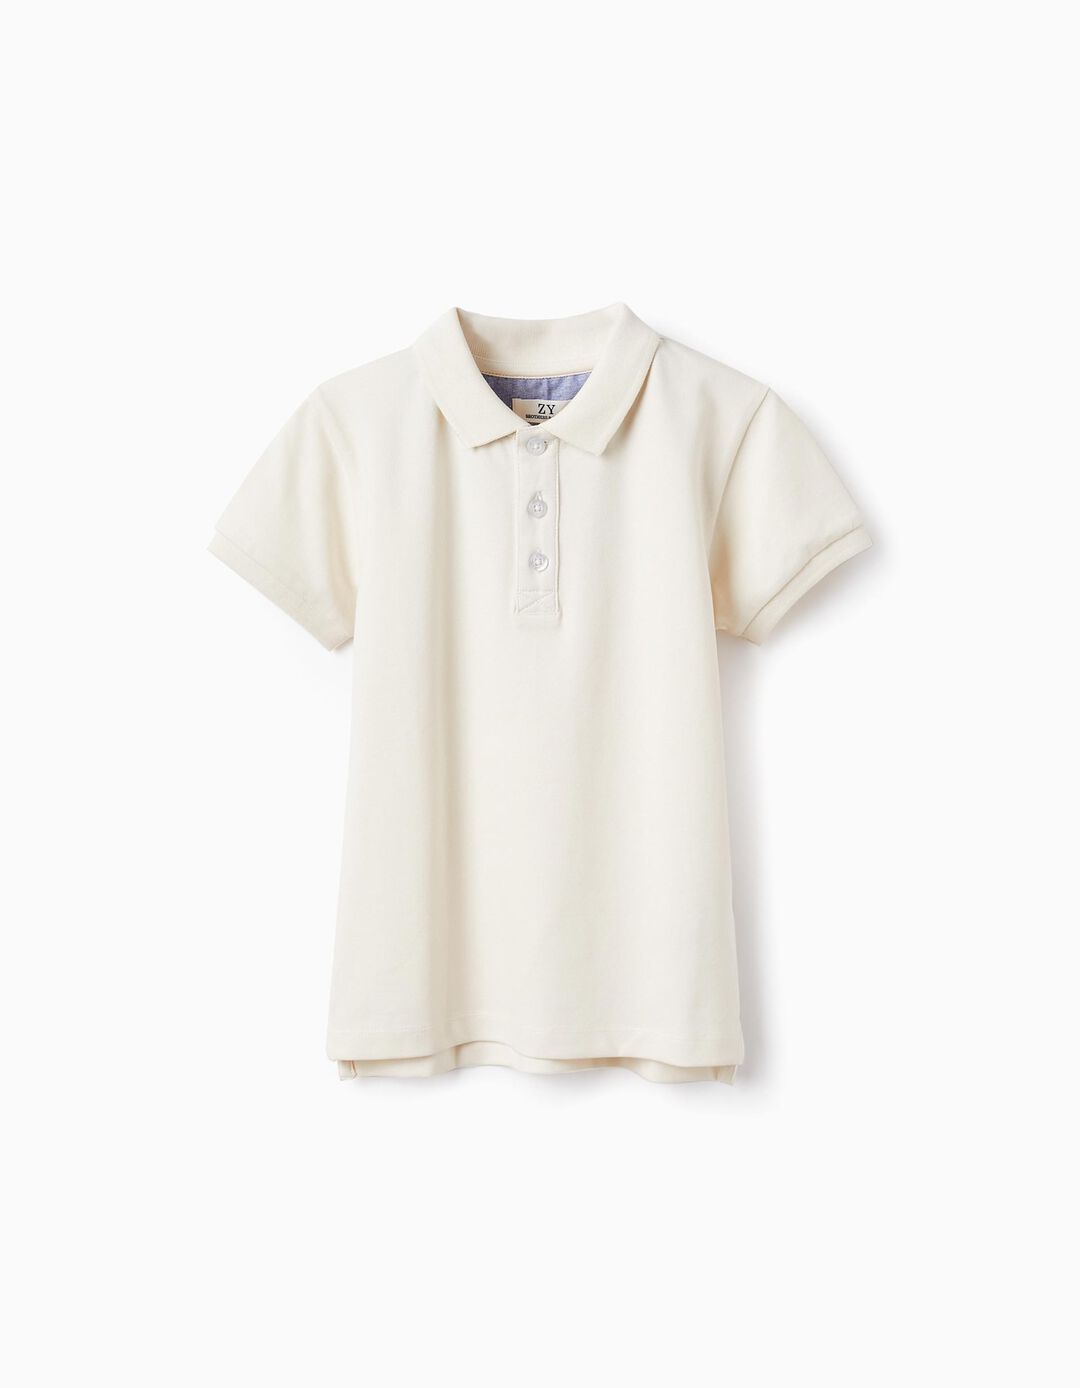 Short Sleeve Polo in Cotton Piqué for Boys 'B&S', White